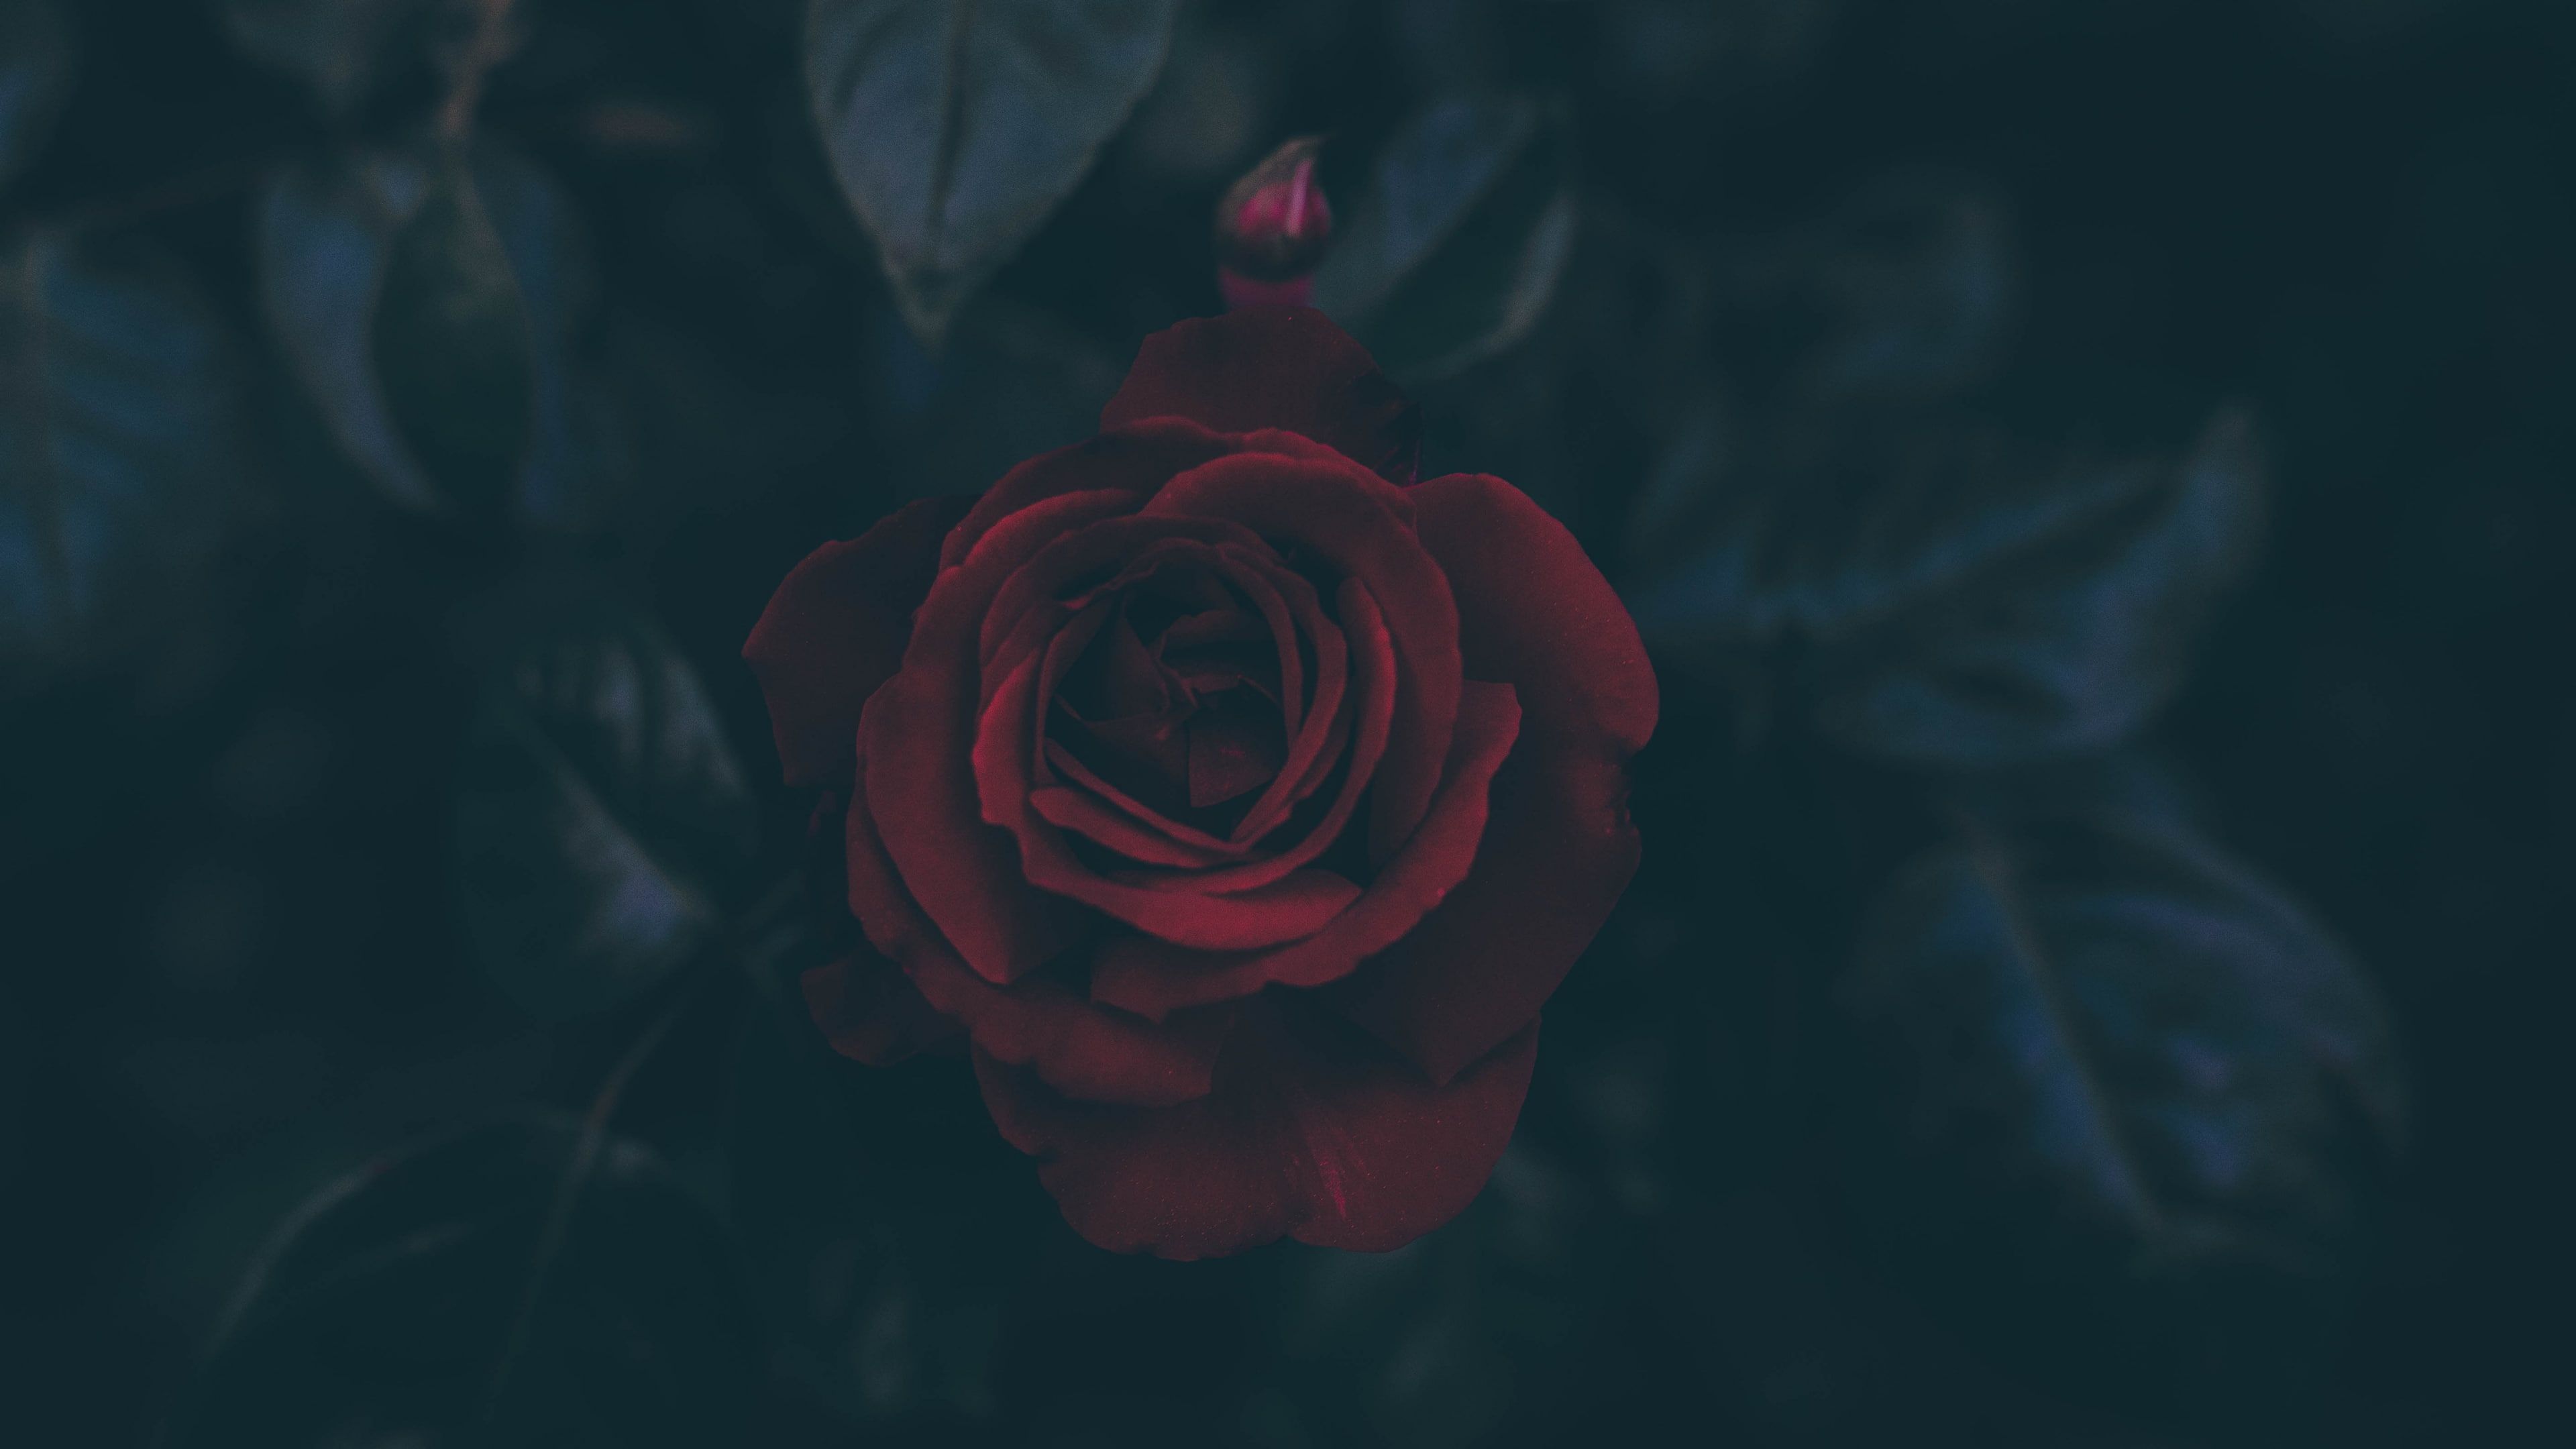 Dark #flowers #leaves #petals Red Flowers #rose K #wallpaper #hdwallpaper #desktop. Rose wallpaper, Rose illustration, Dark flowers